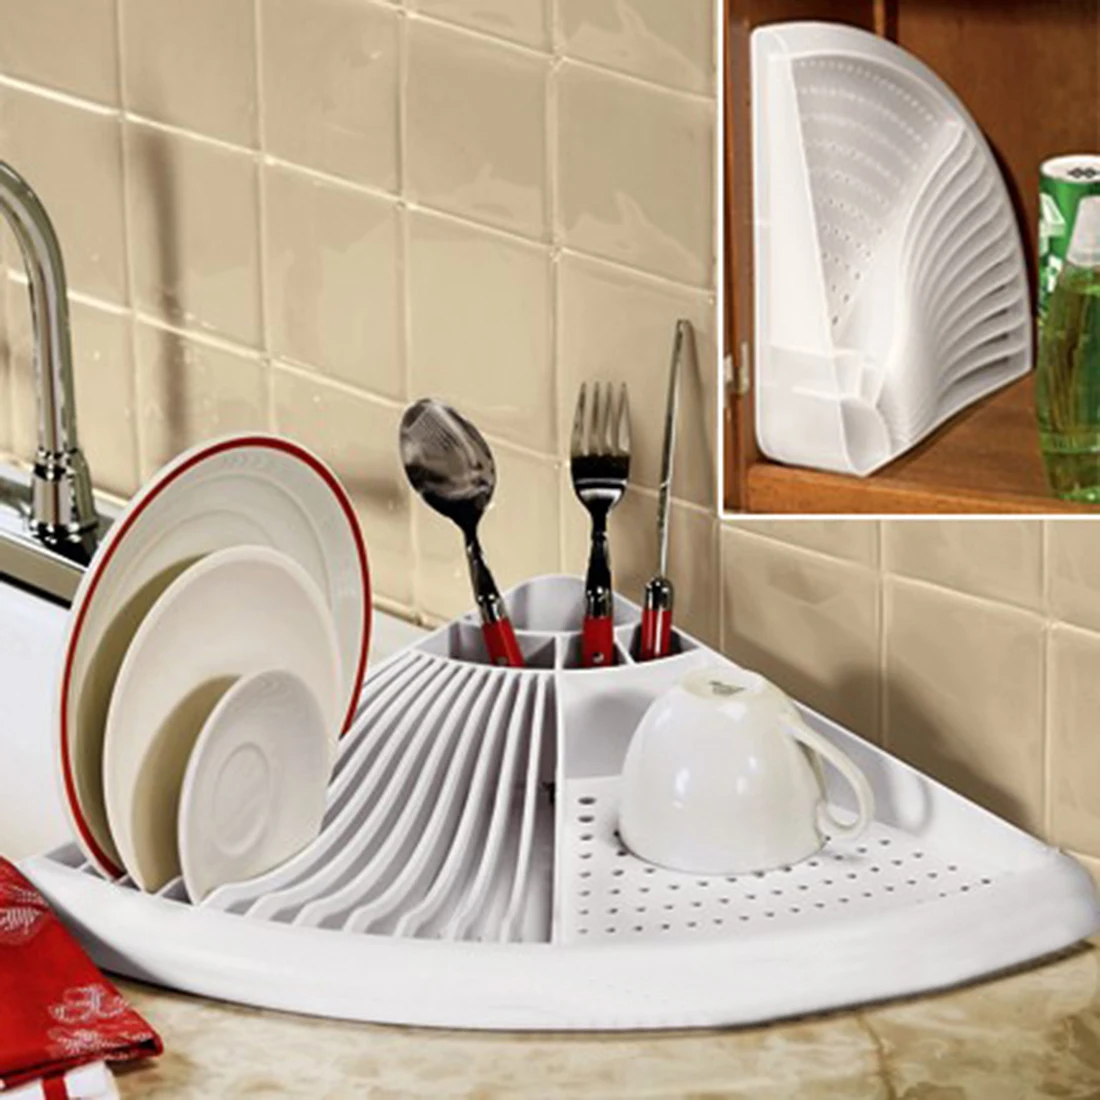 Многофункциональная Посуда Кухонная сливная стойка веерообразная полка для посуды пластиковая сливная стойка Органайзер сушильная полка для посуды-белый